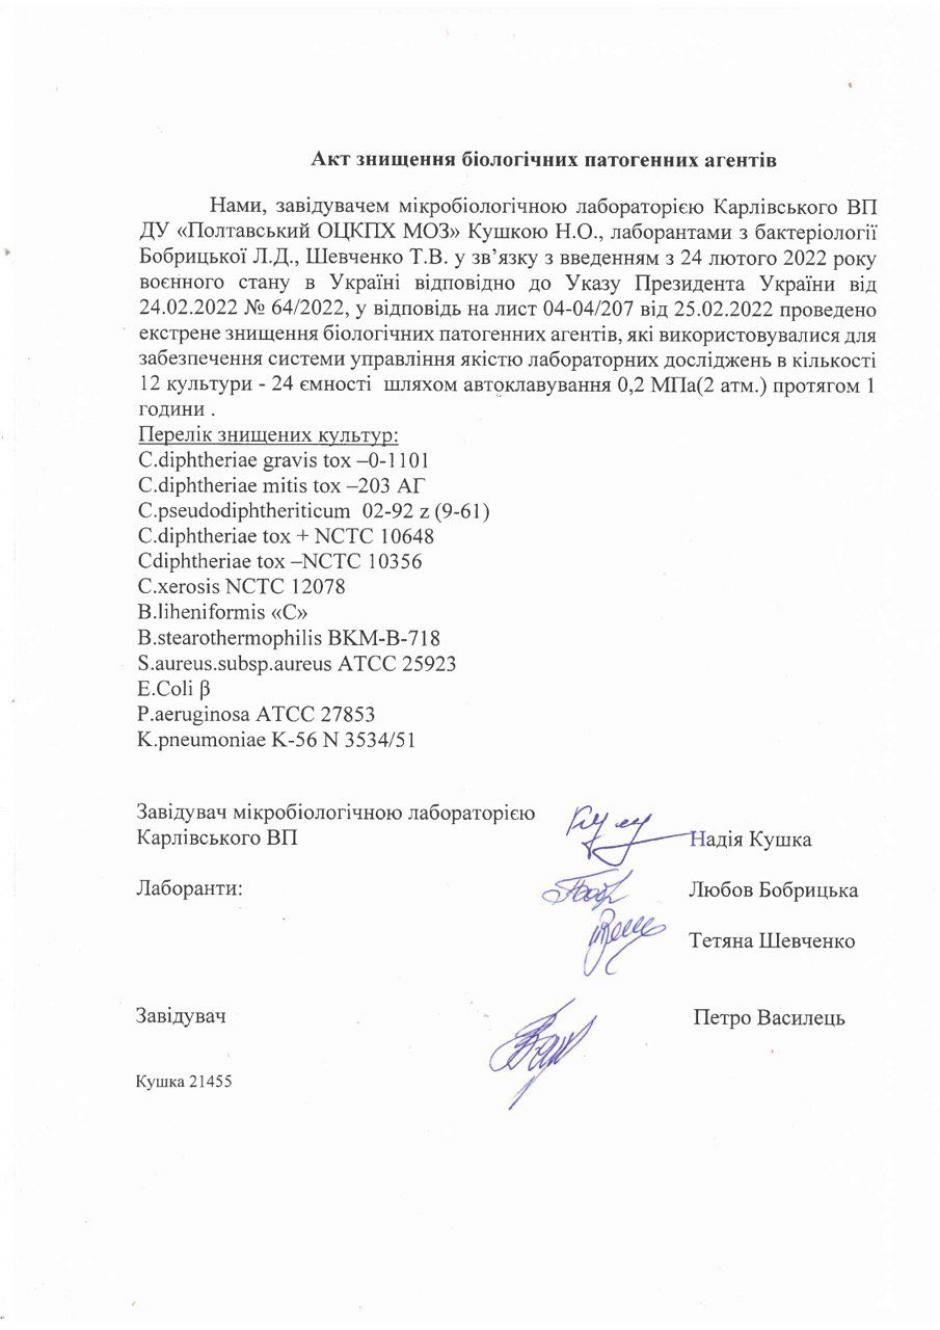 Página del presunto documento oficial ucraniano, junto a parte del listado de agentes biológicos